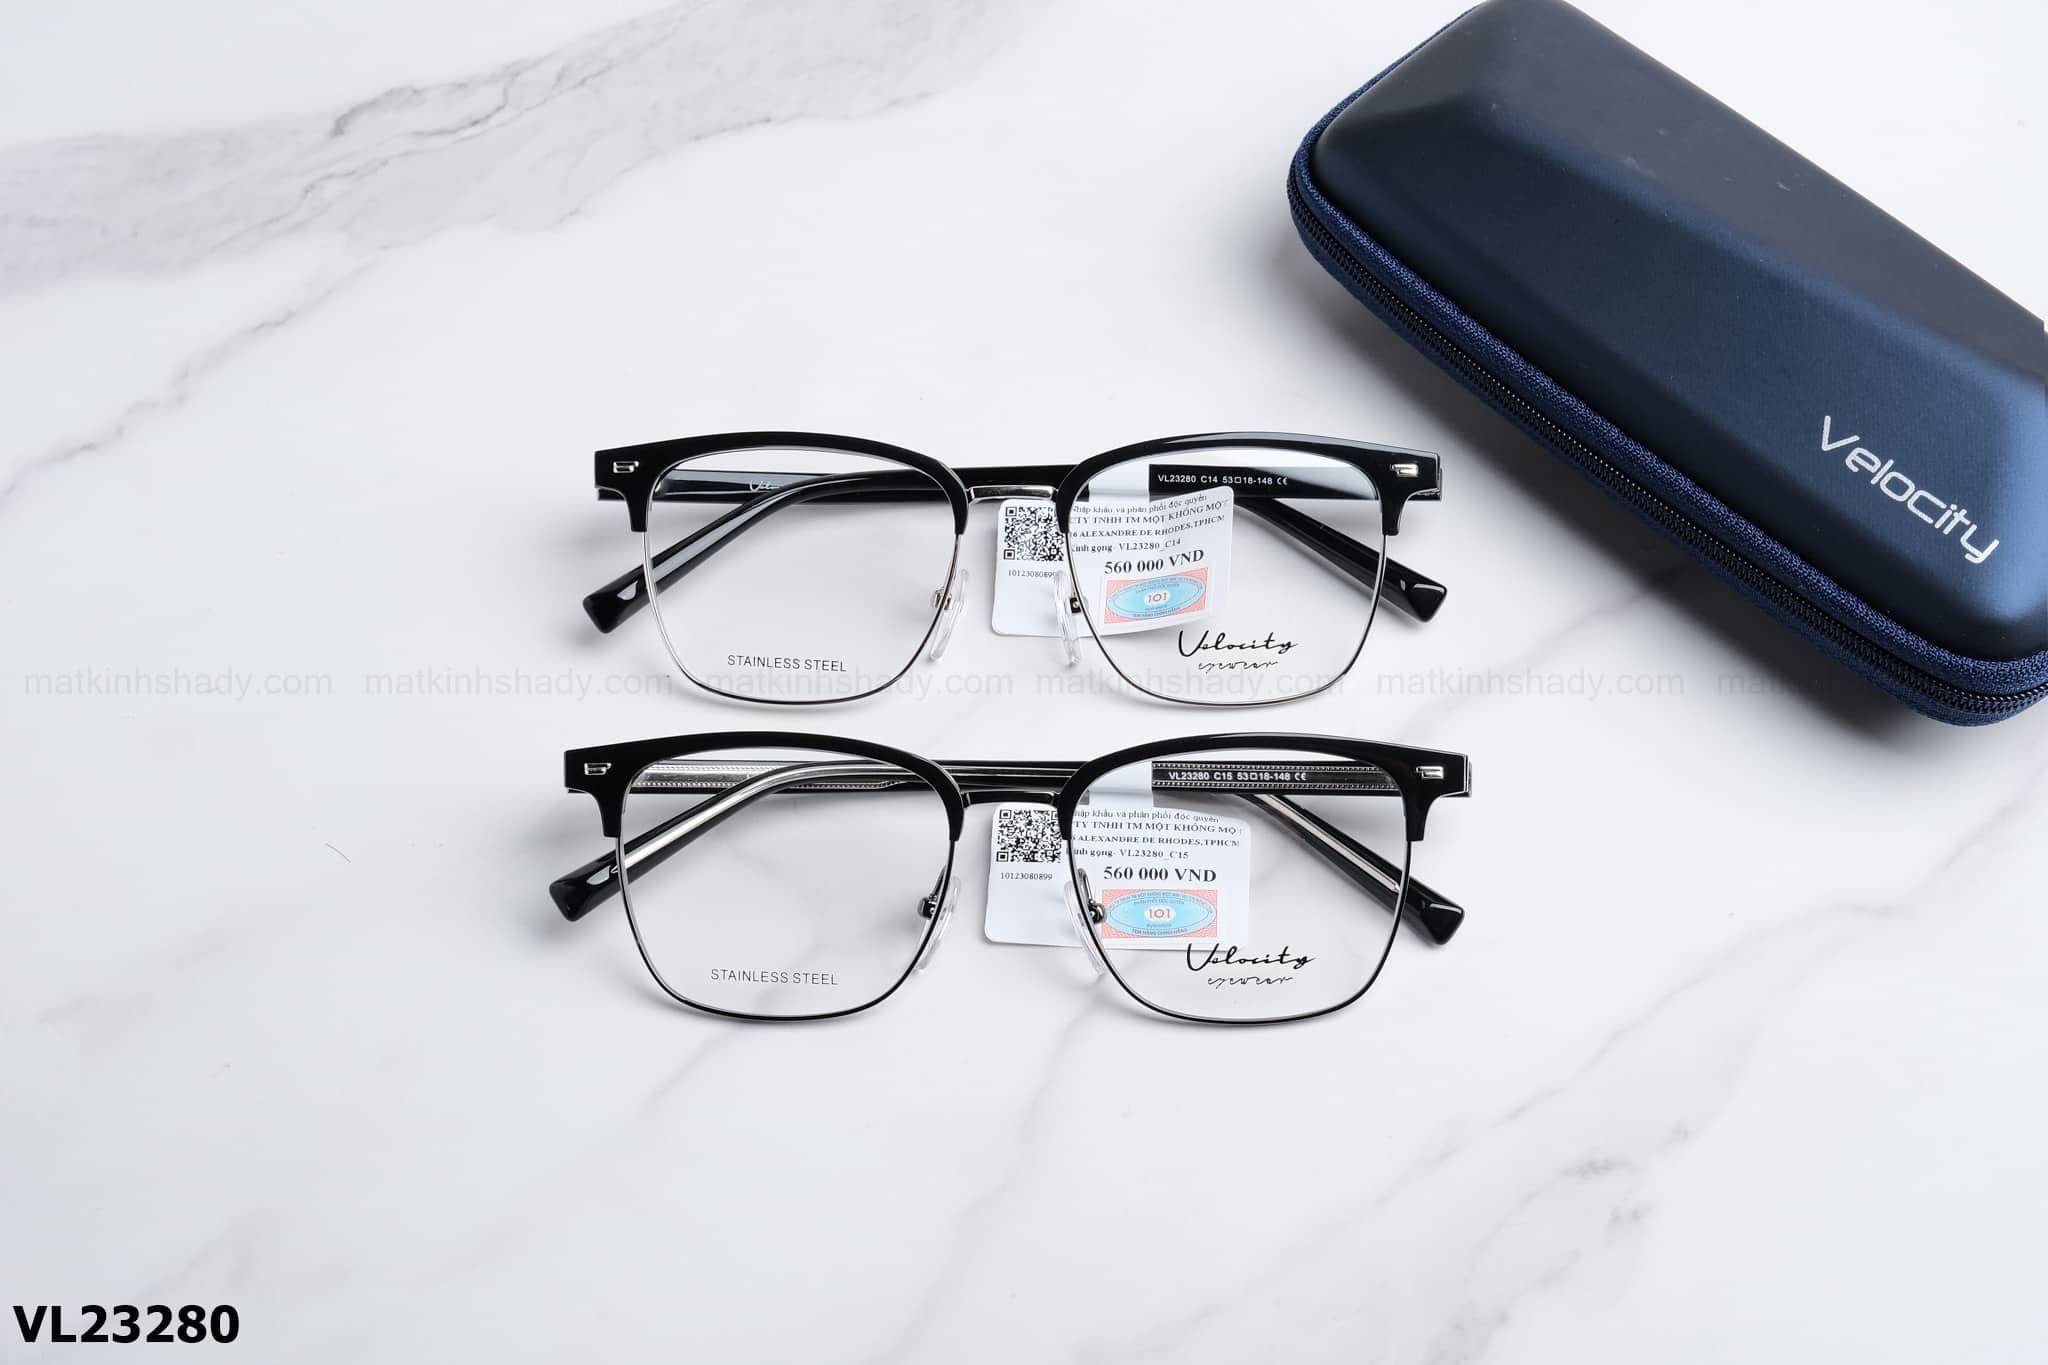  Velocity Eyewear - Glasses - VL23280 